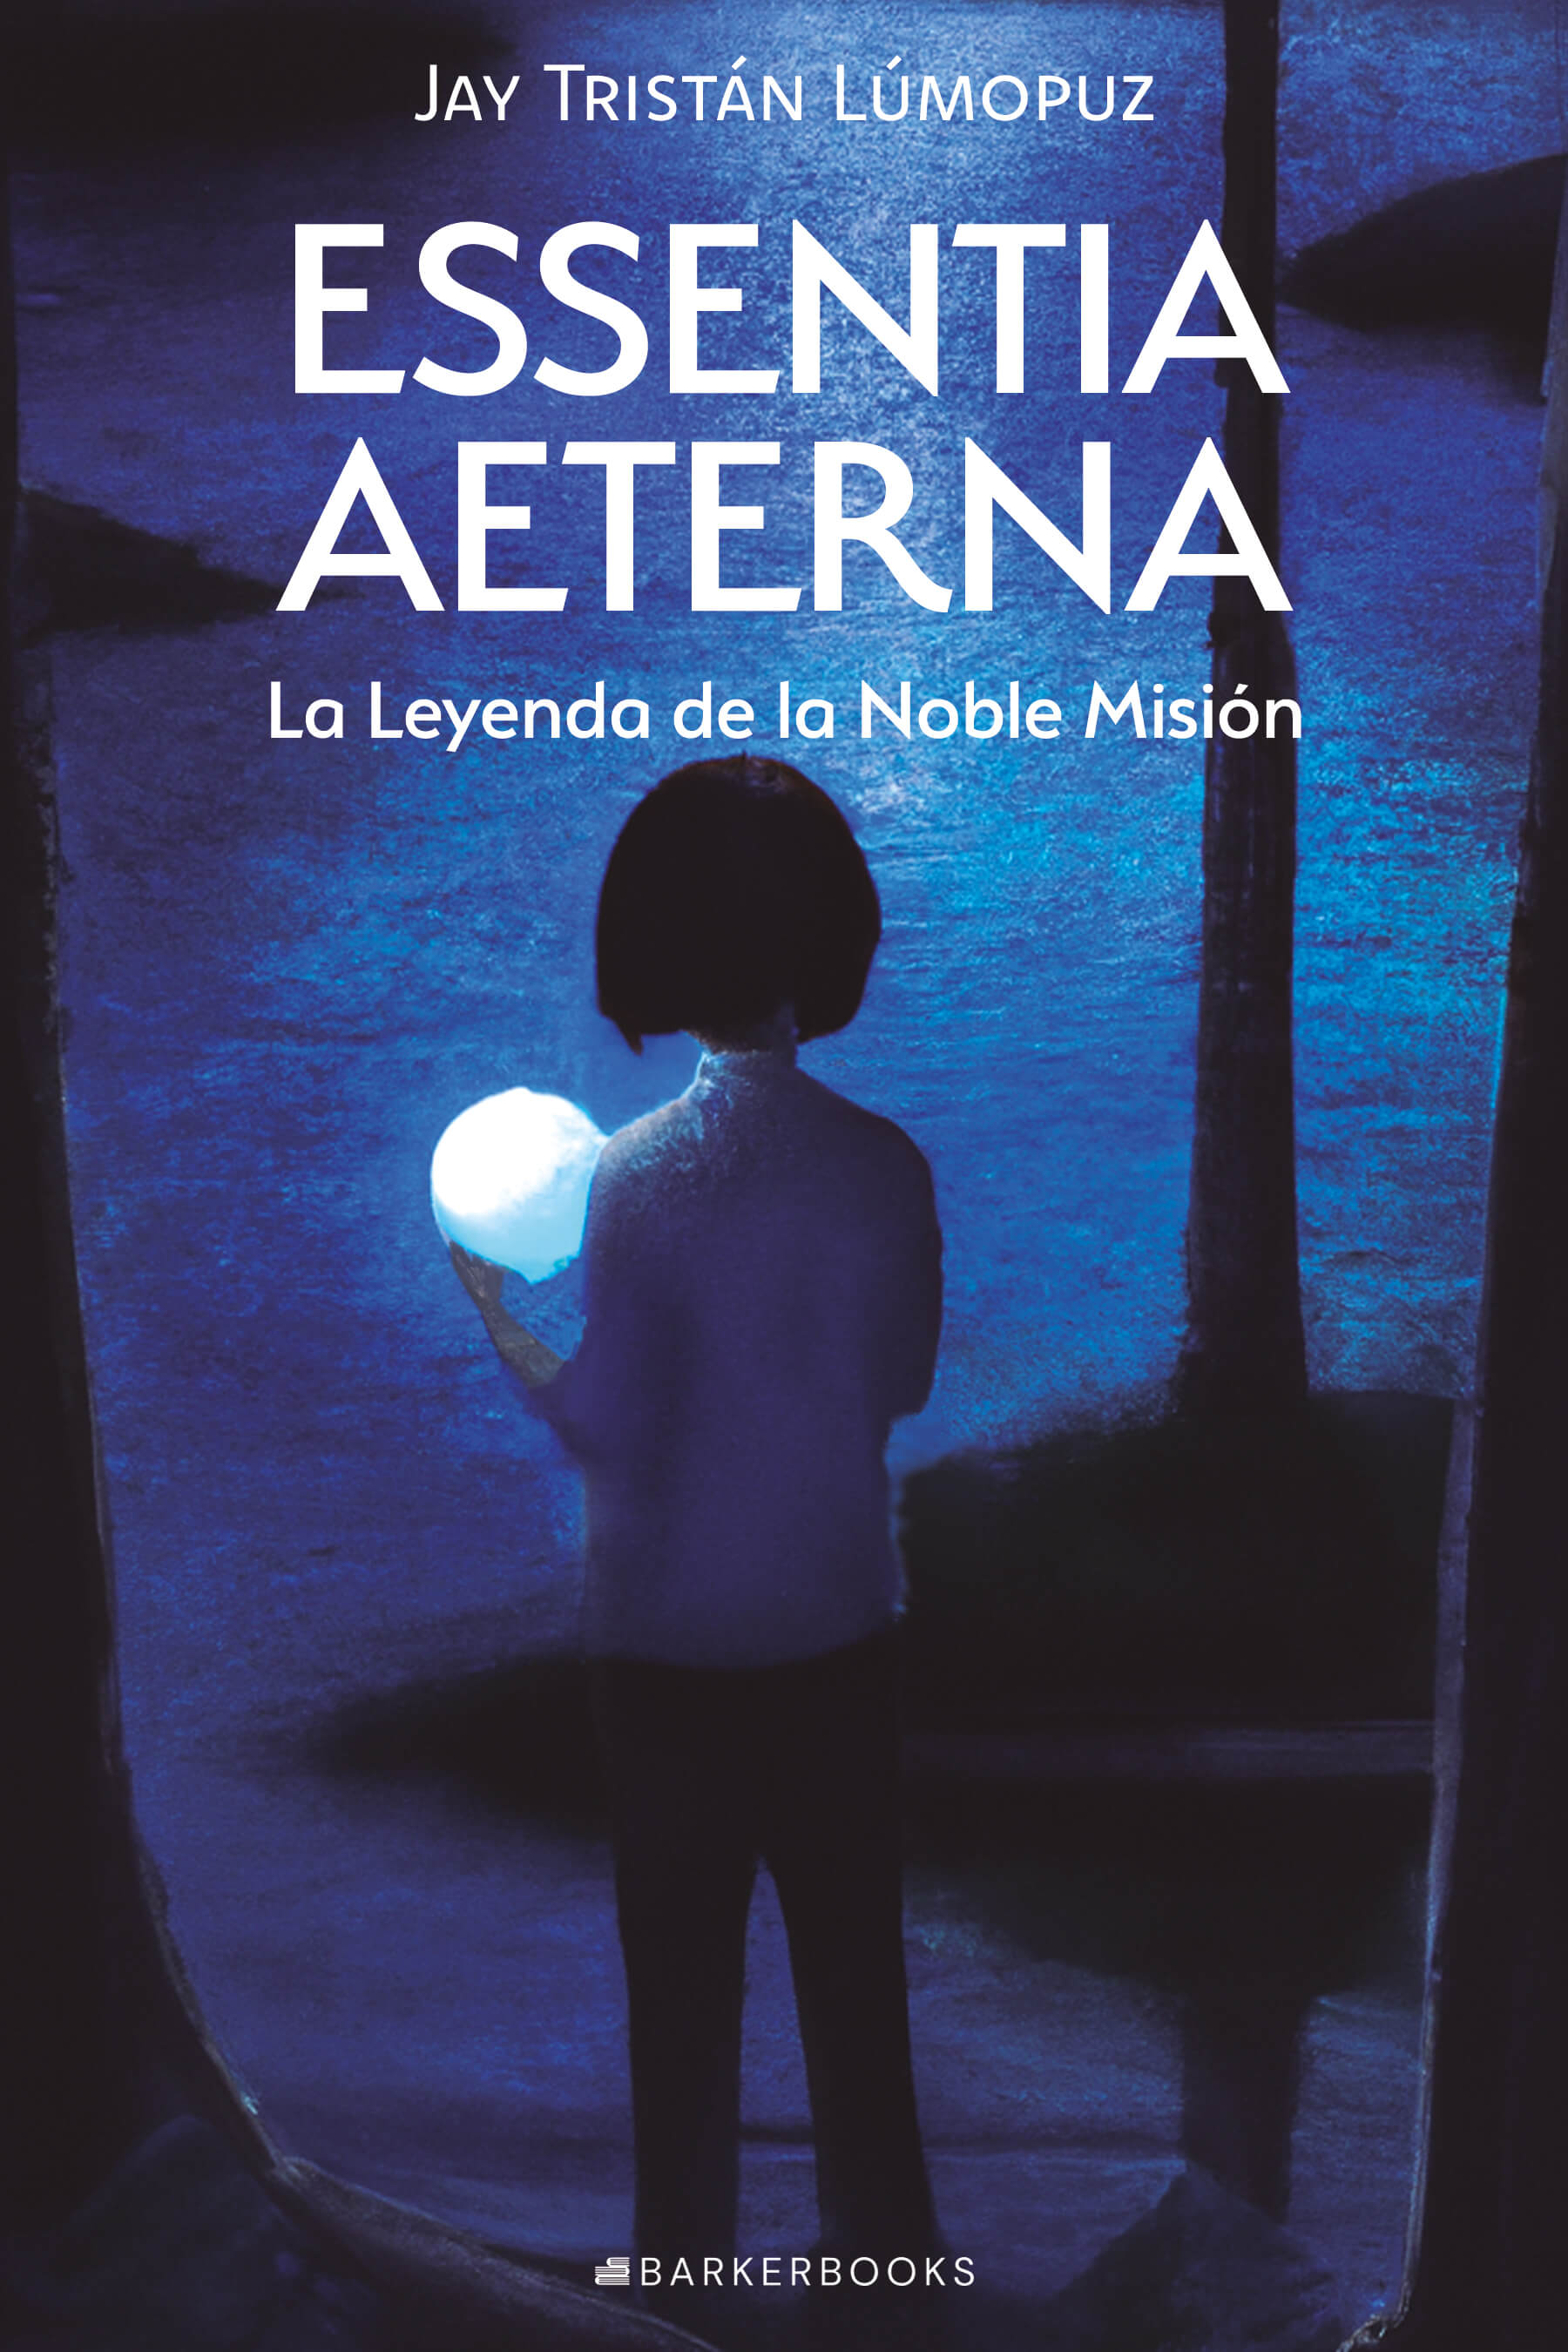 Portada del libro Essentia Aeterna La Leyenda de la
                    Noble Misión. Se percibe un niño de espaldas que sostiene una esfera blanca frente a un lago en medio de un bosque durante la noche.